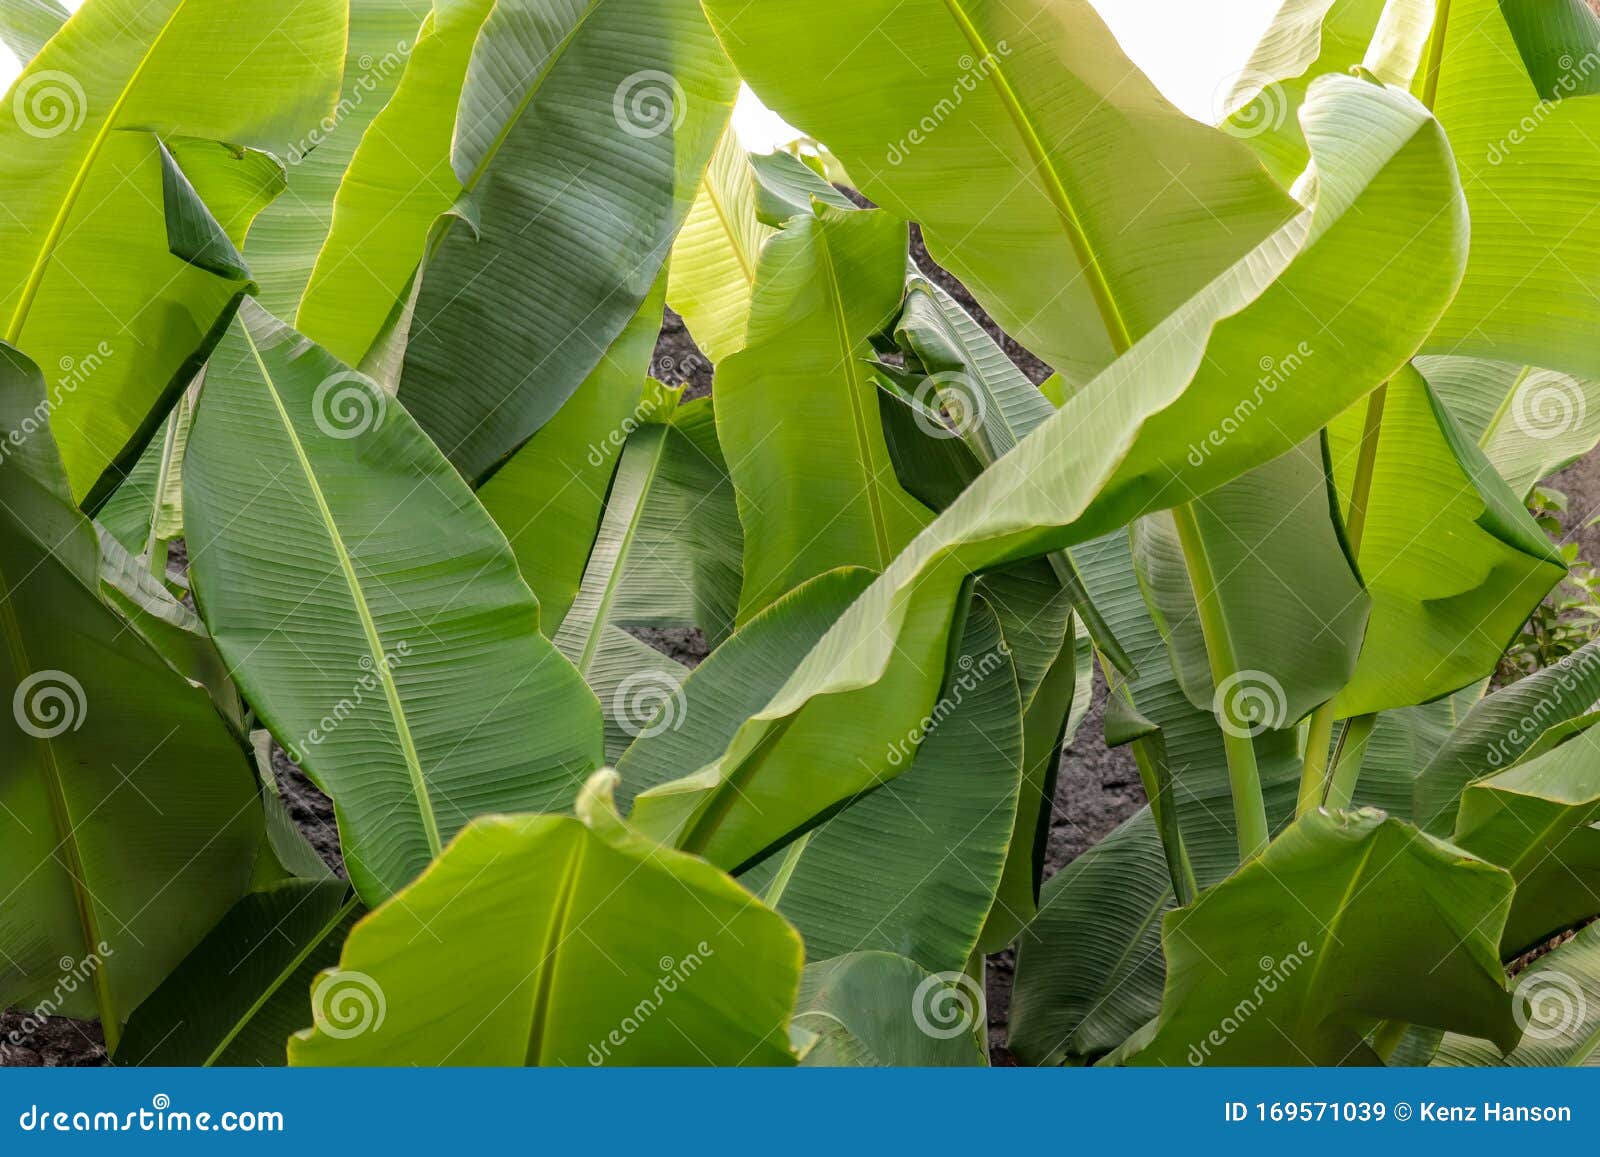 banana leaf midrib, green and fresh